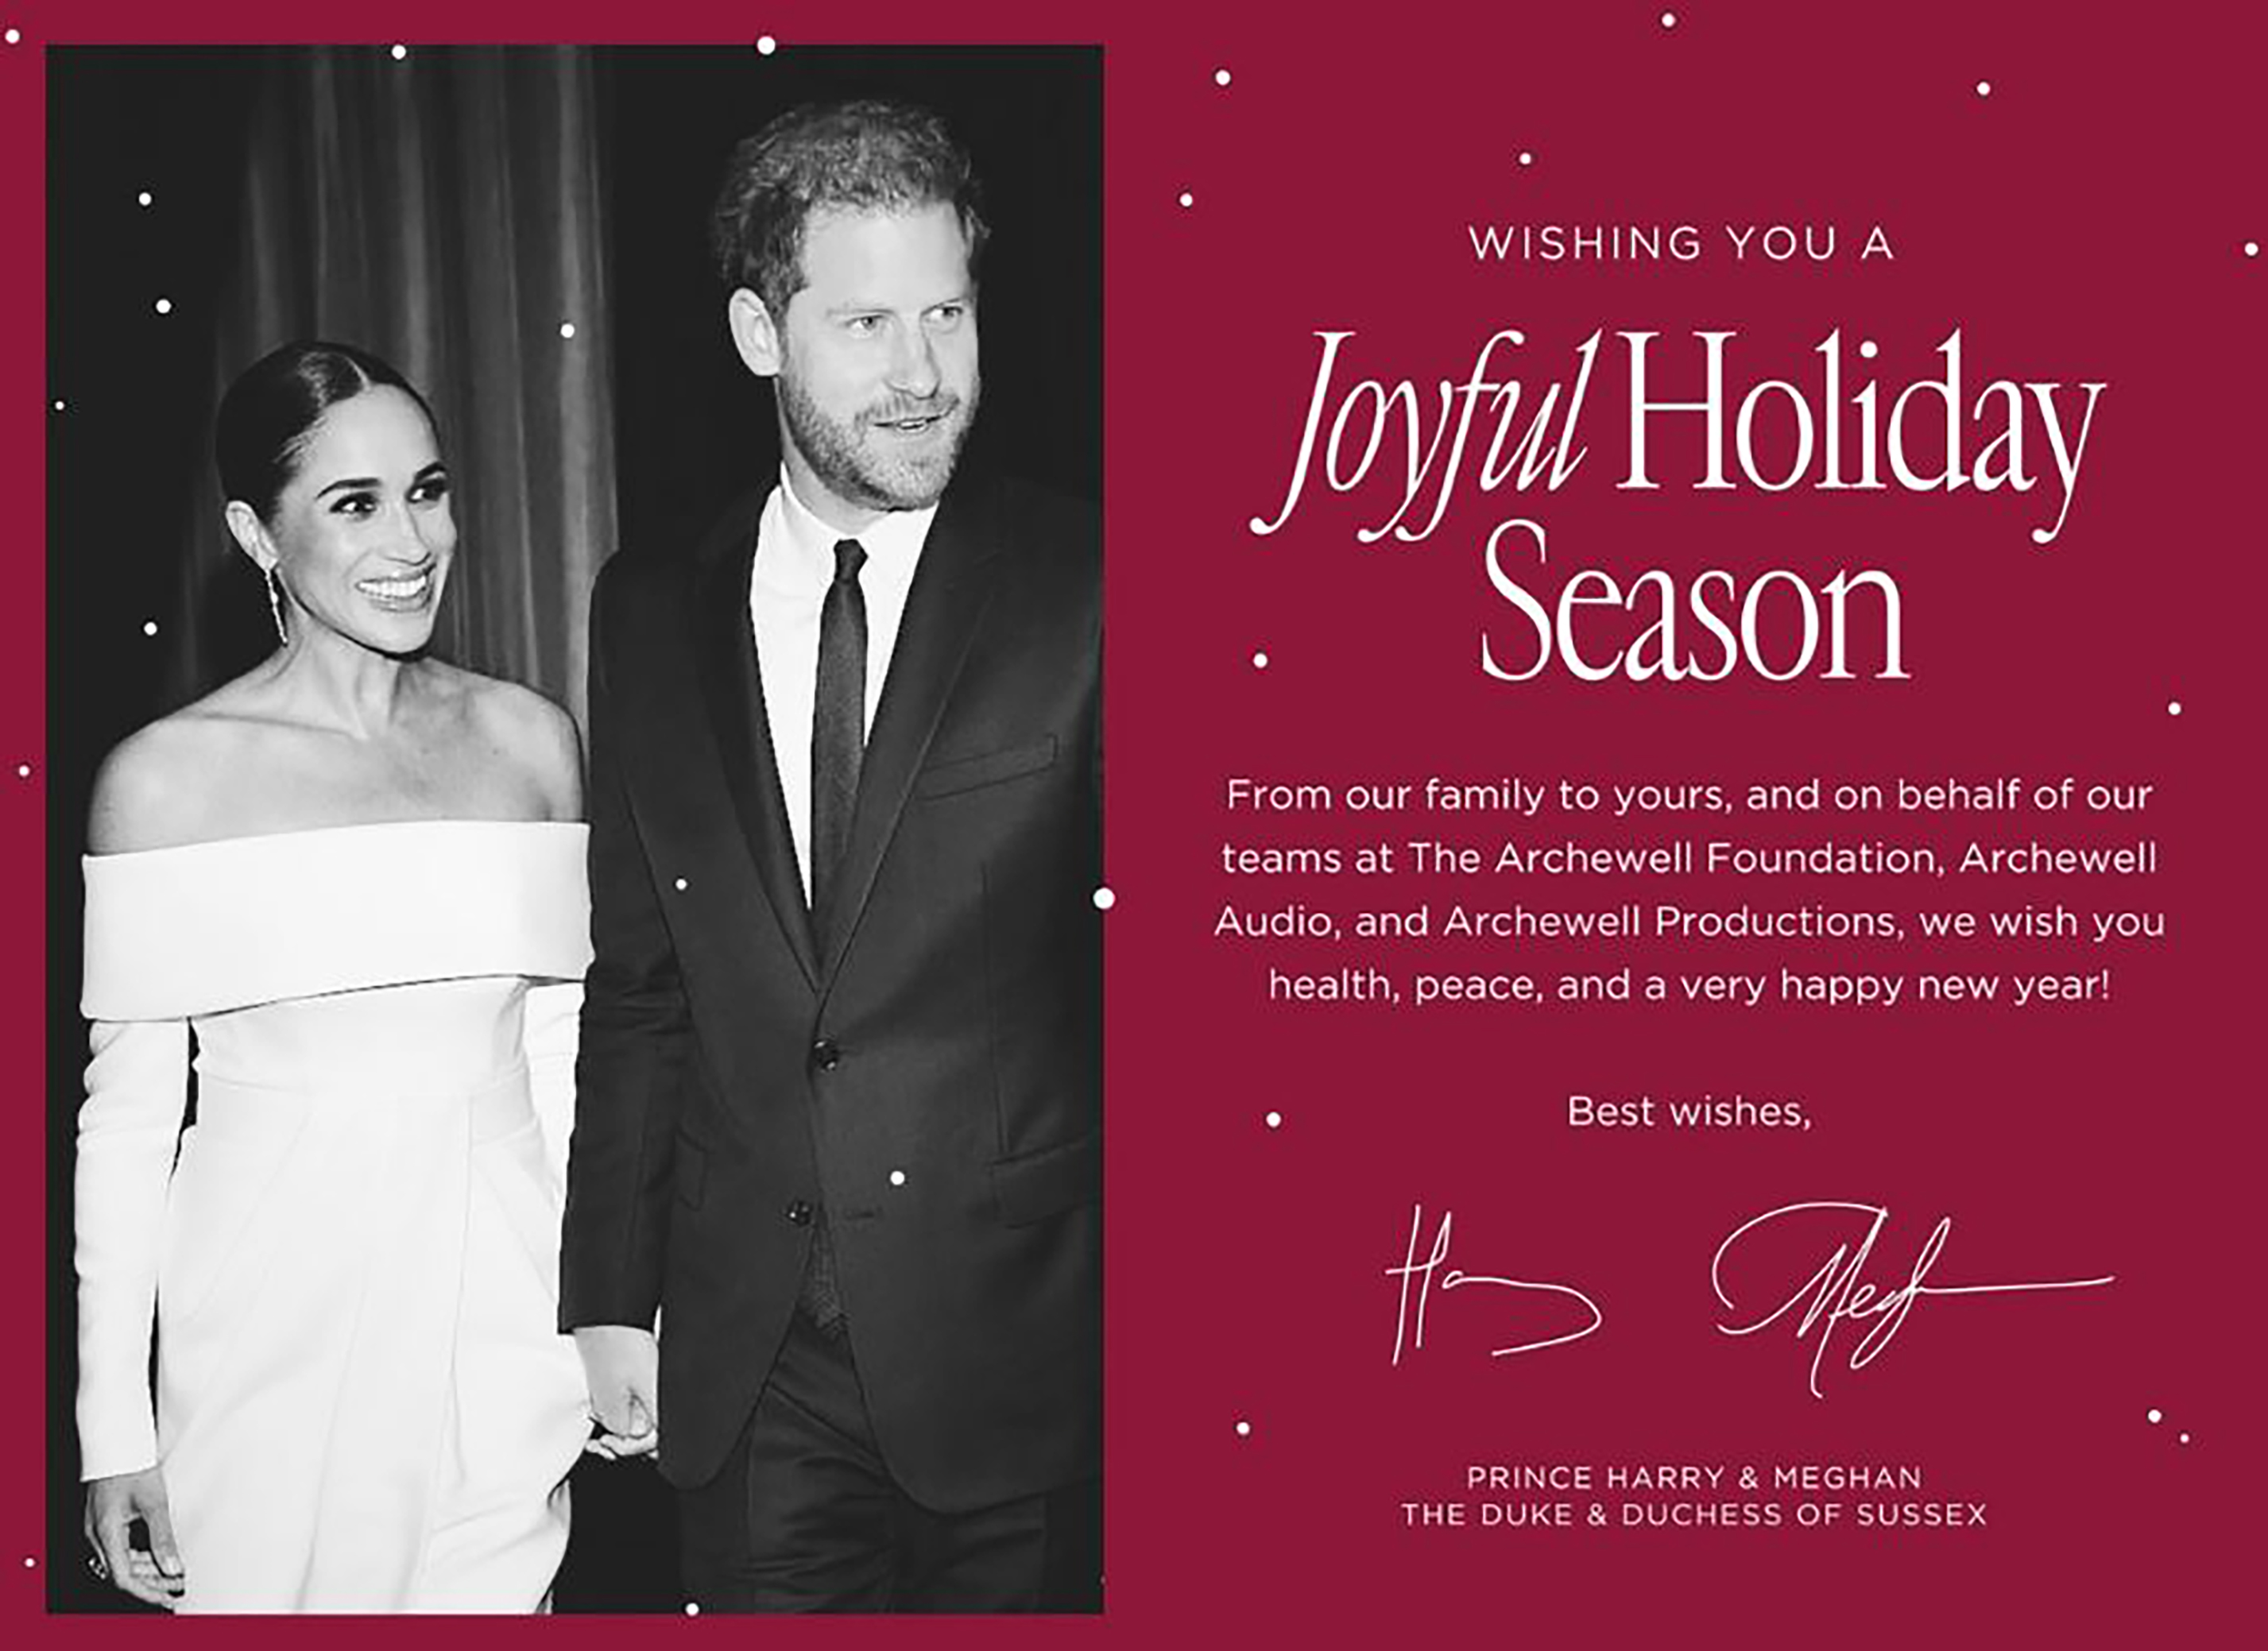 Prinz Harry und Meghan haben am Freitag ihre papierlose Weihnachtskarte veröffentlicht